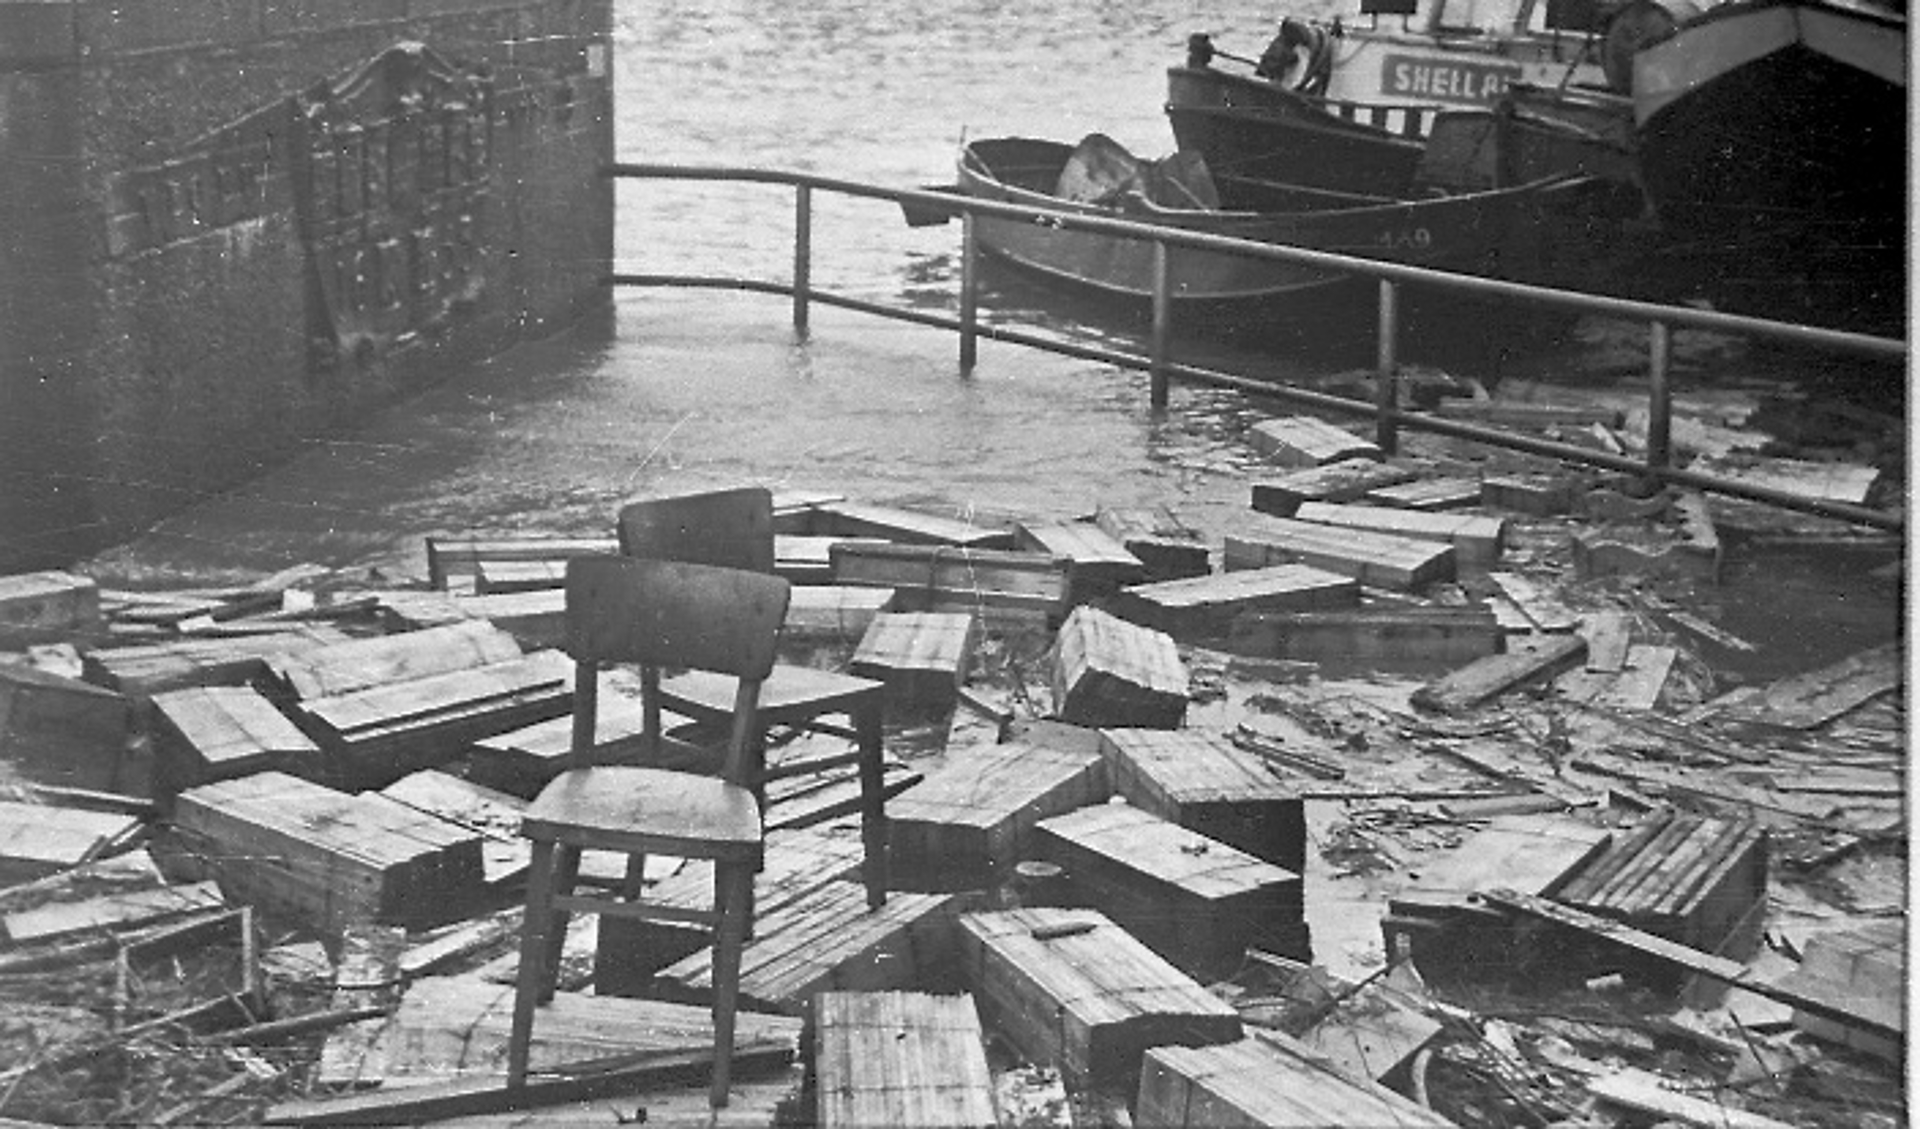 Ravage na de storm van 1 februari 1953 op de Stadhuiskade bij de Wateringsche Sluis. Al het hout van de kistenfabriek was weggespoeld en overal in het overstroomde gebied was het terug te vinden. 